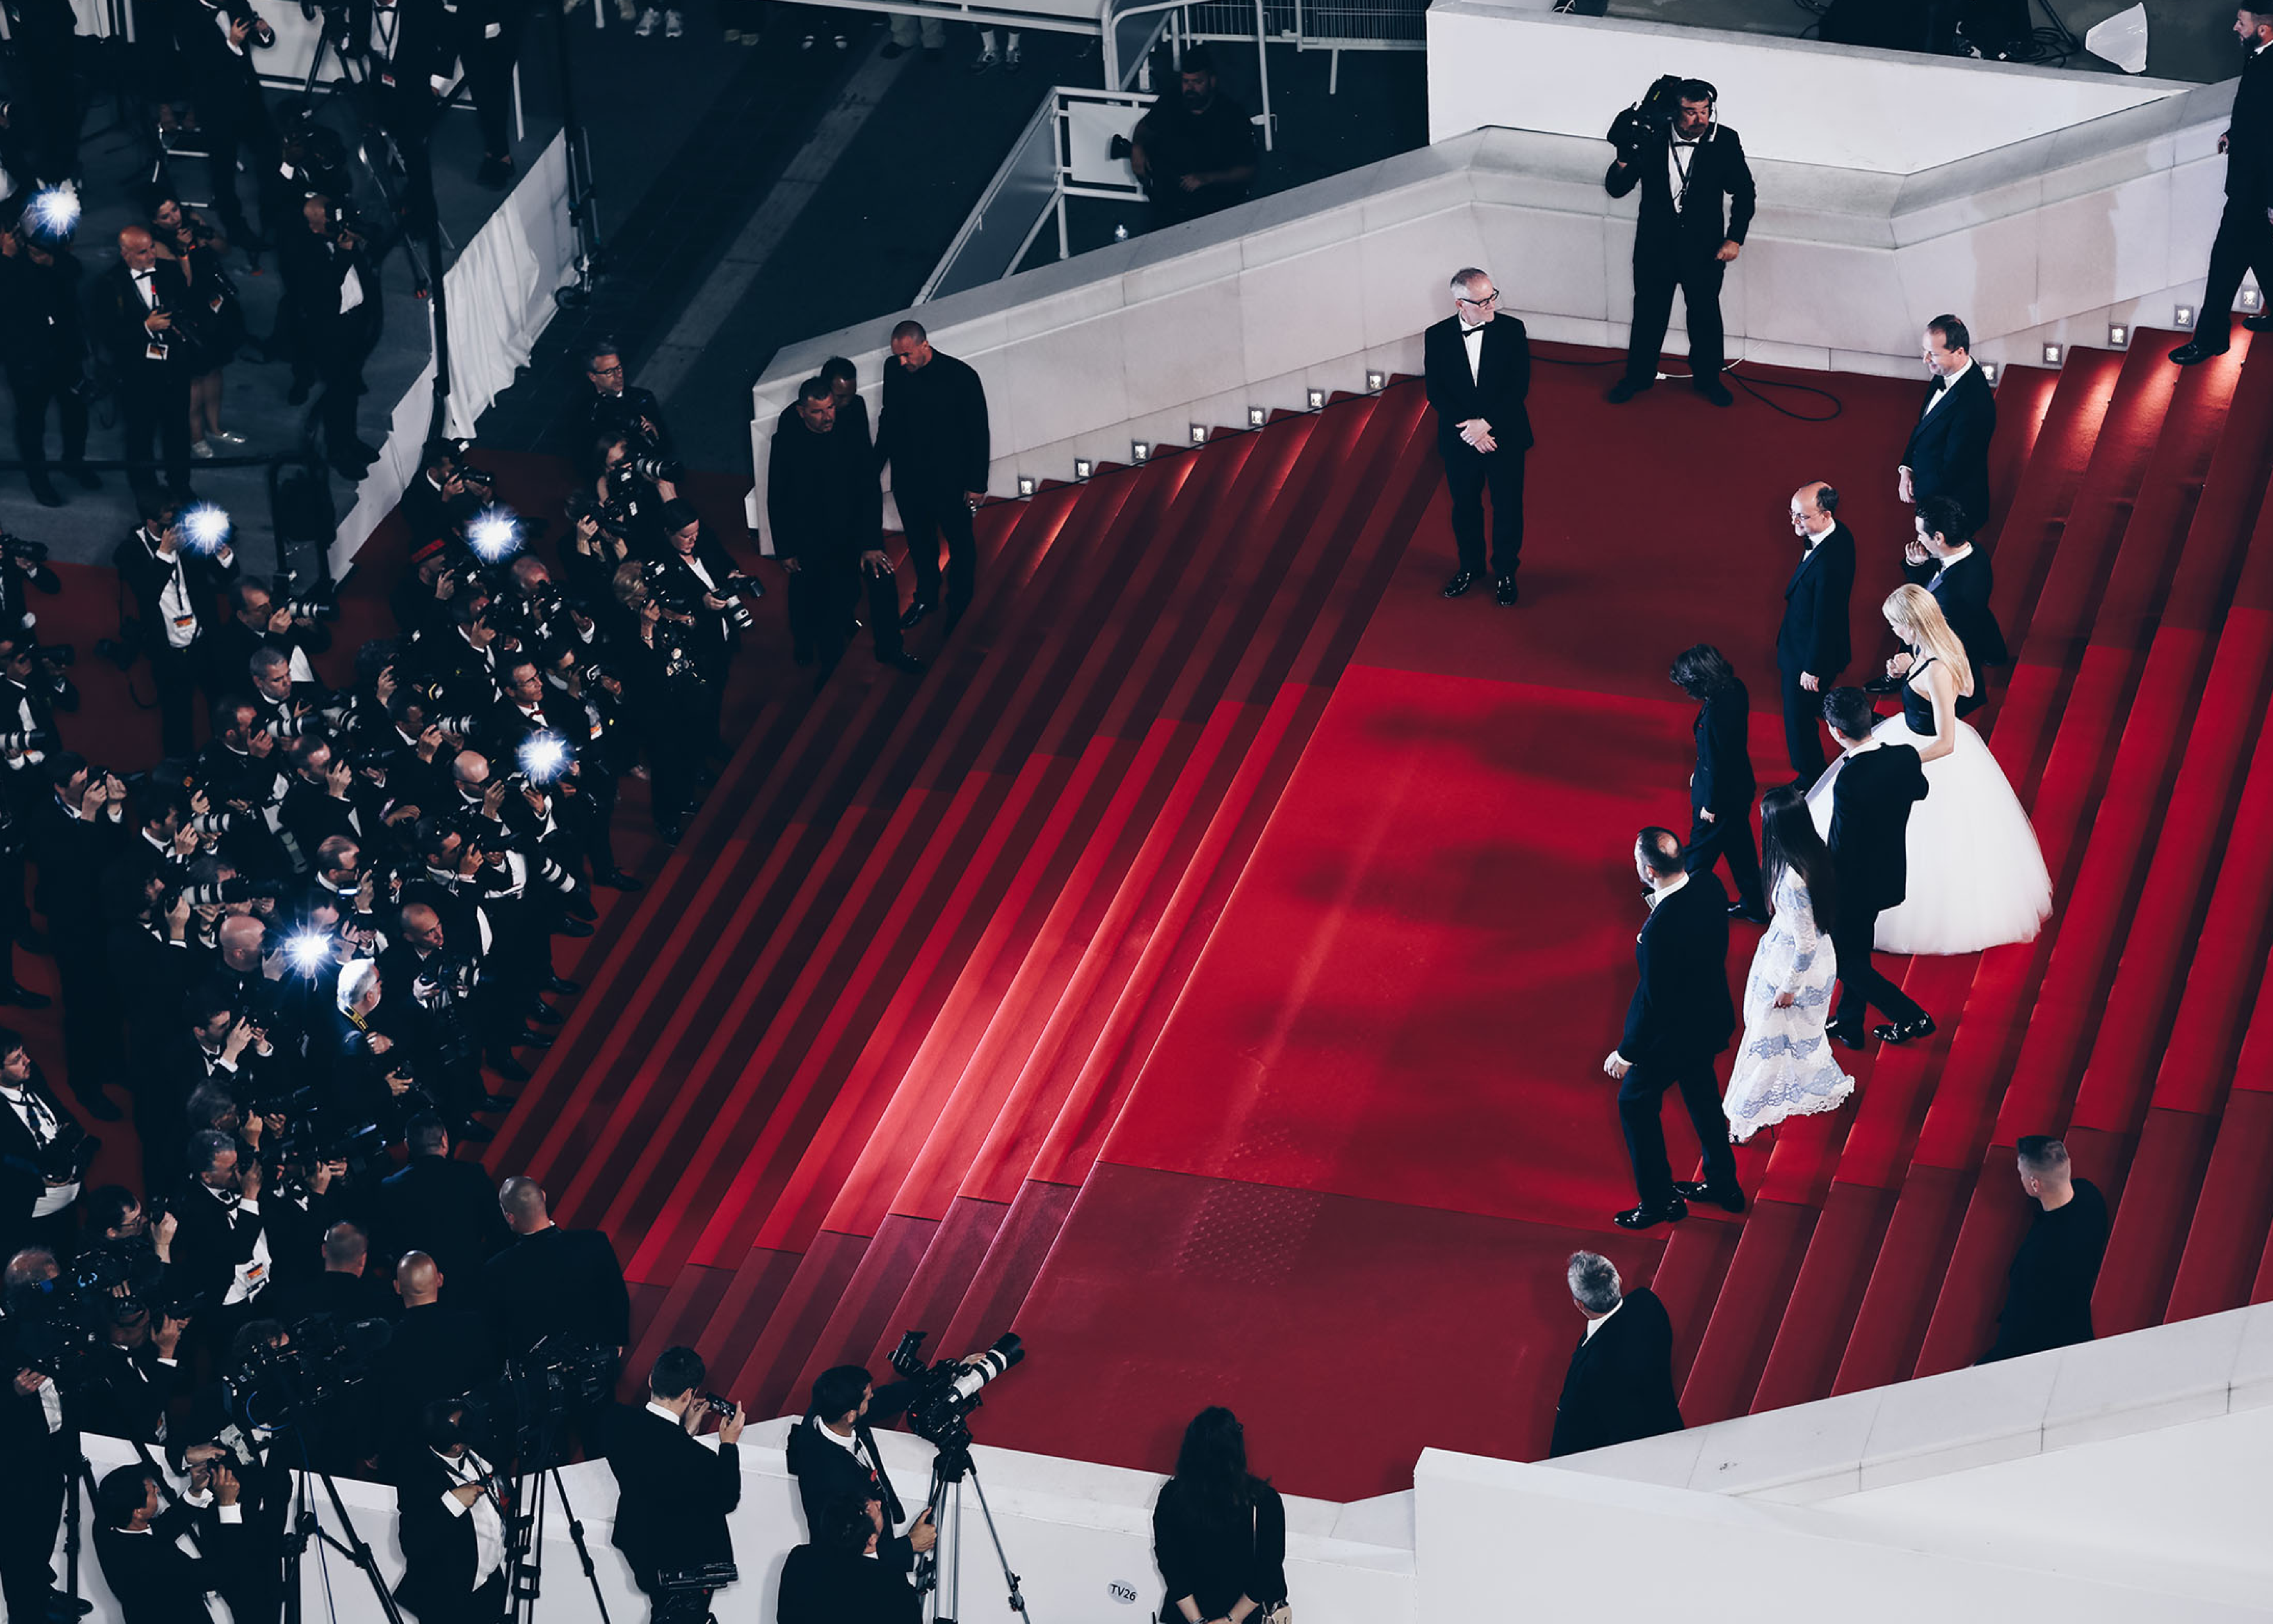 Festival de Cannes 2019: Os penteados das estrelas